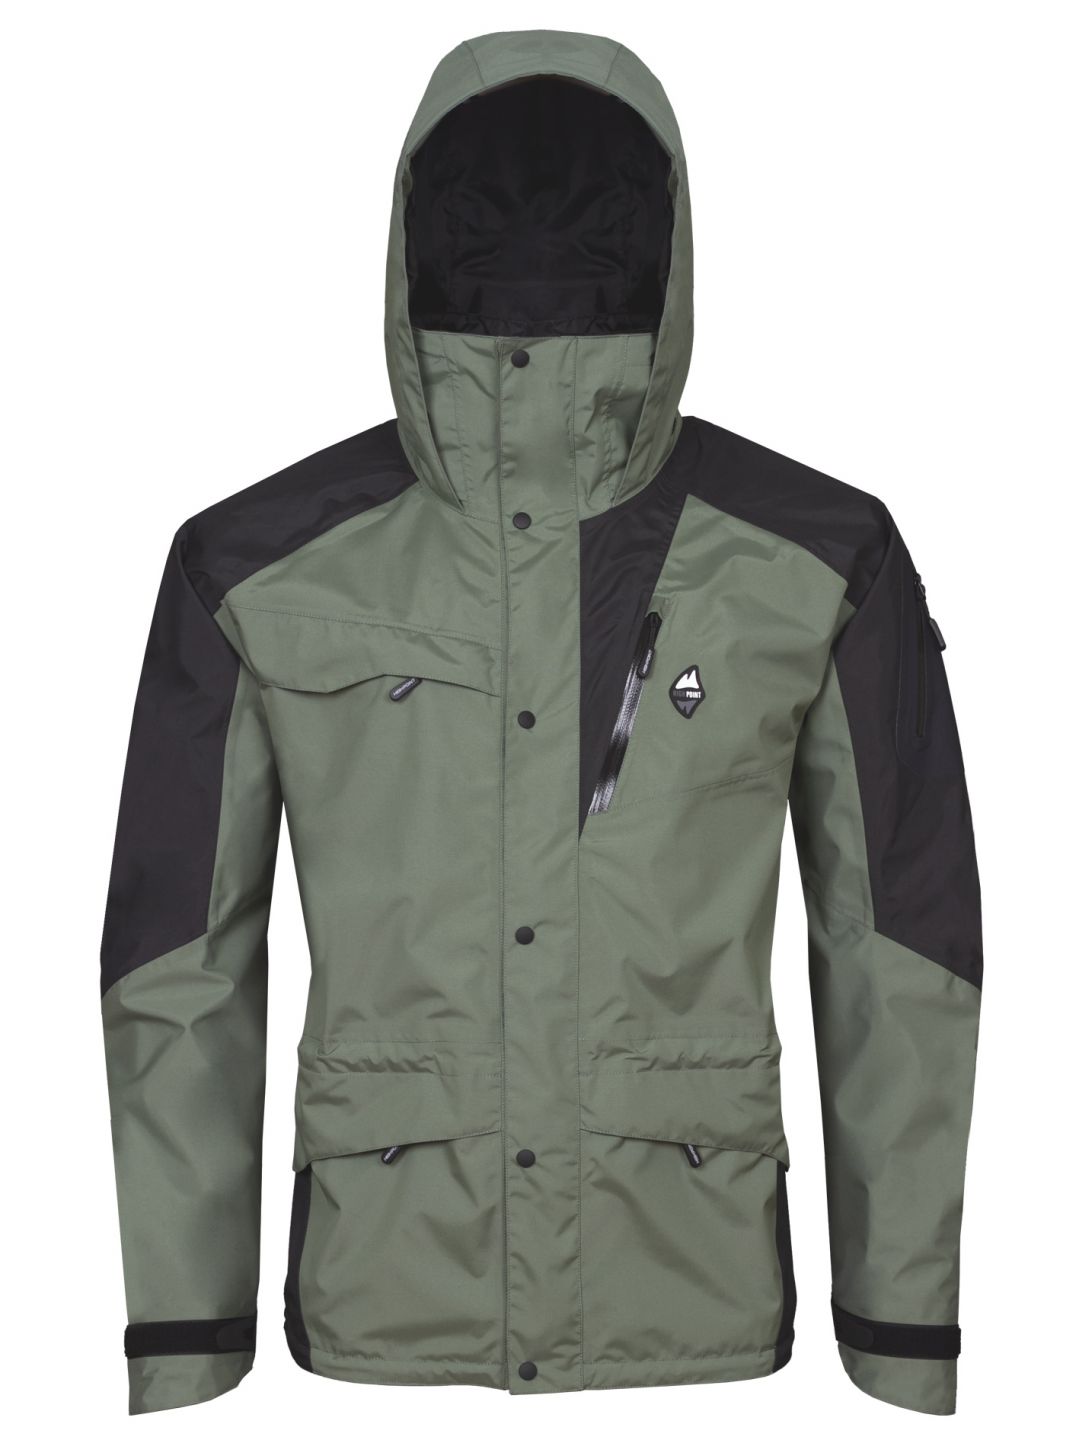 HIGH POINT MANIA 7.0 jacket laurel khaki/black varianta: M